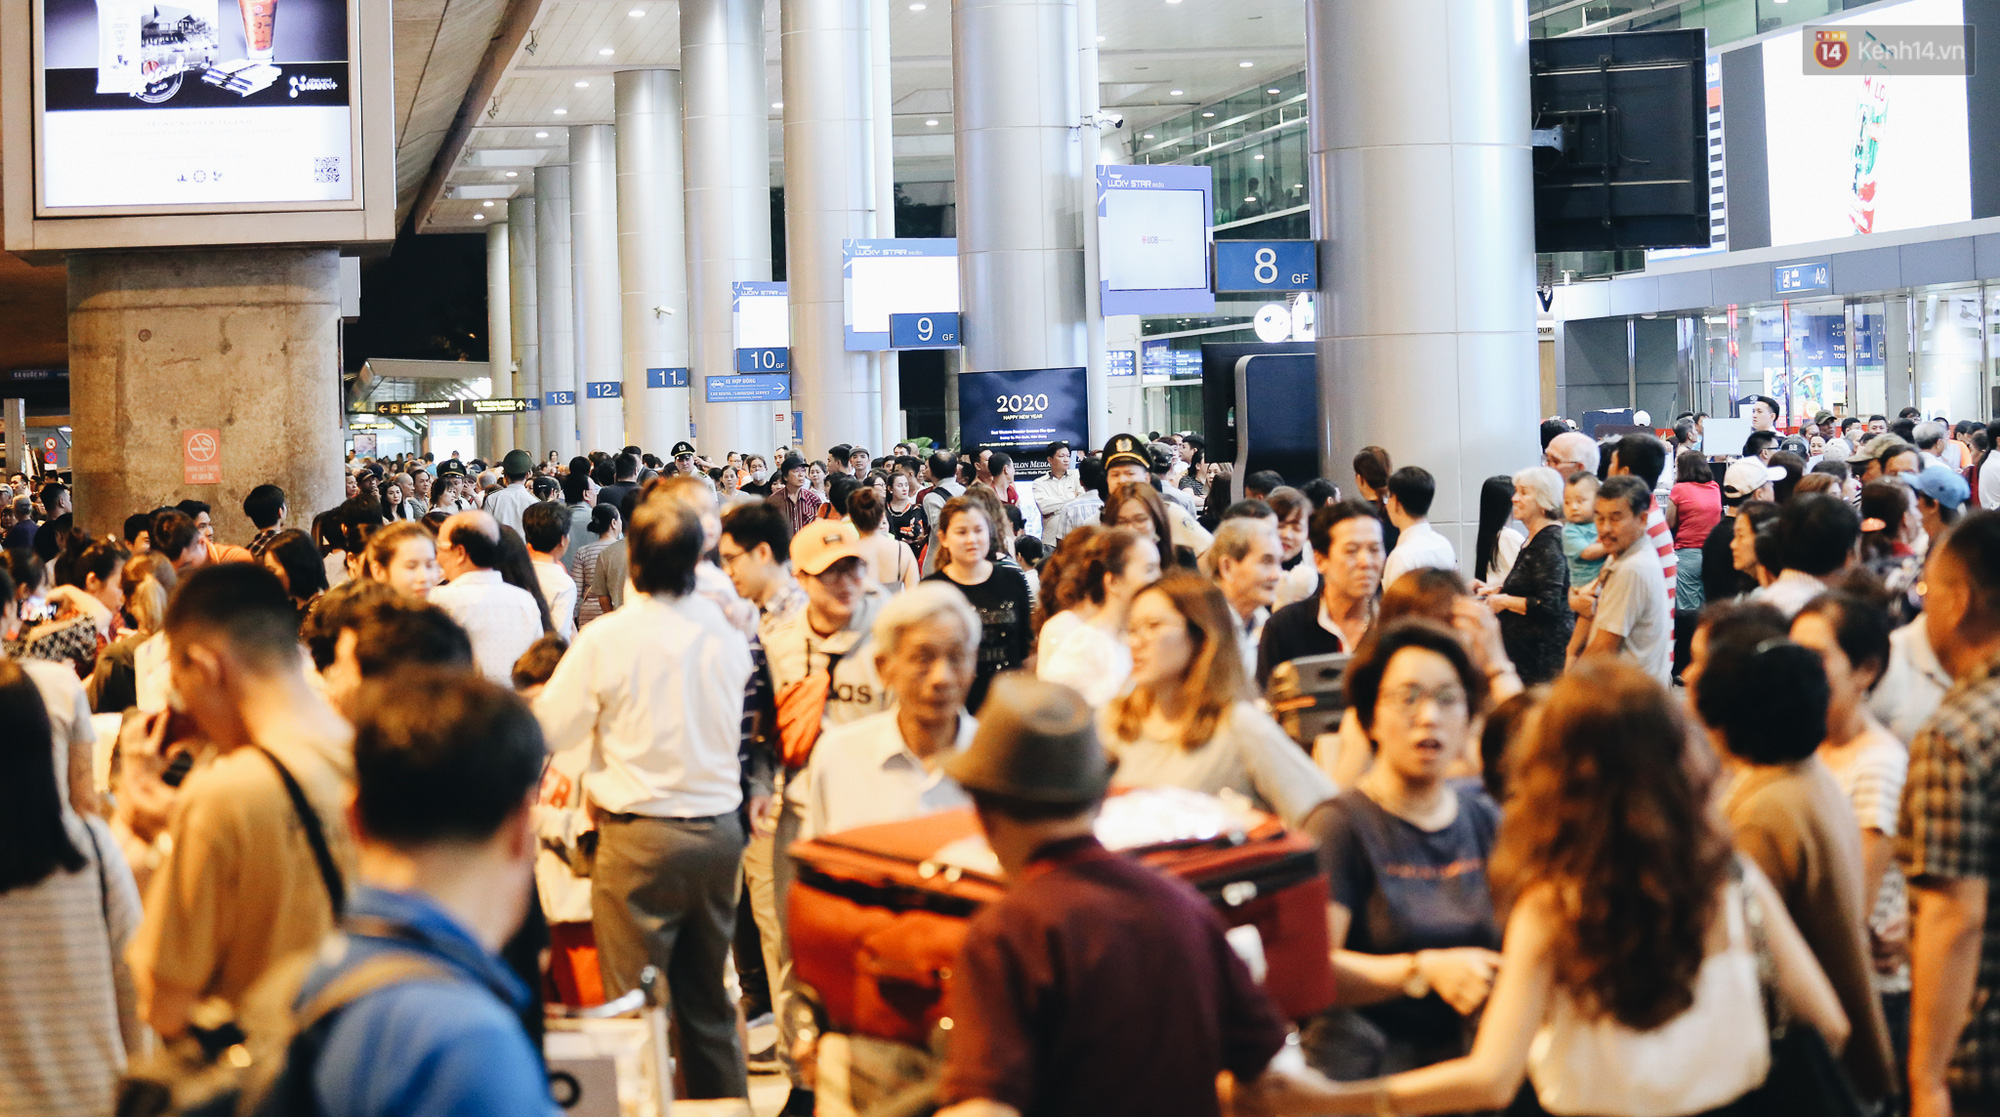 Sân bay Tân Sơn Nhất chật kín người dân đón Việt kiều về quê ăn Tết Canh Tý 2020, trẻ em và người lớn ngủ vật vờ dưới sàn - Ảnh 6.